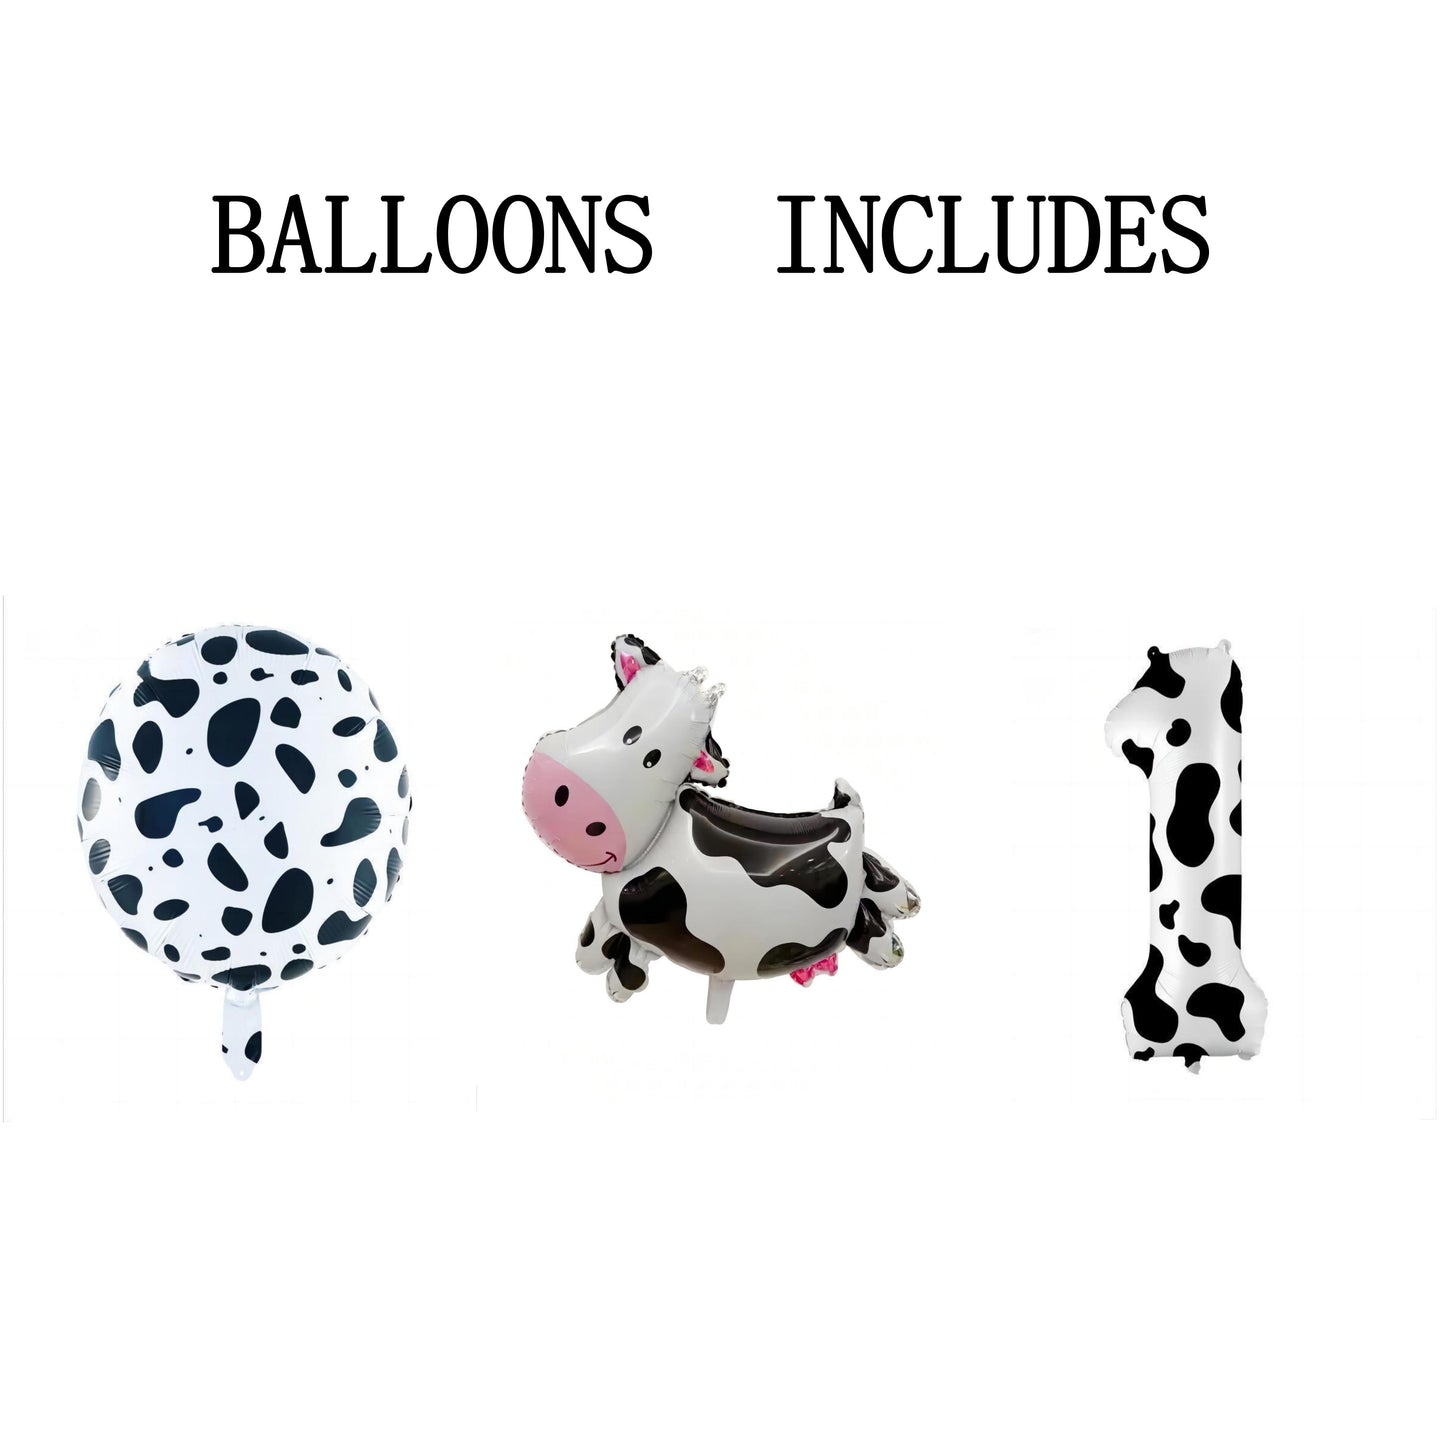 3 Pieces Cow Print Balloon Cow Shape Foil Balloons, 40 Inch Cow Print Number Balloon 1 White Cow Print Balloons Farm Animal Theme Party Decorations Supplies Animal Balloons, Birthday Balloons